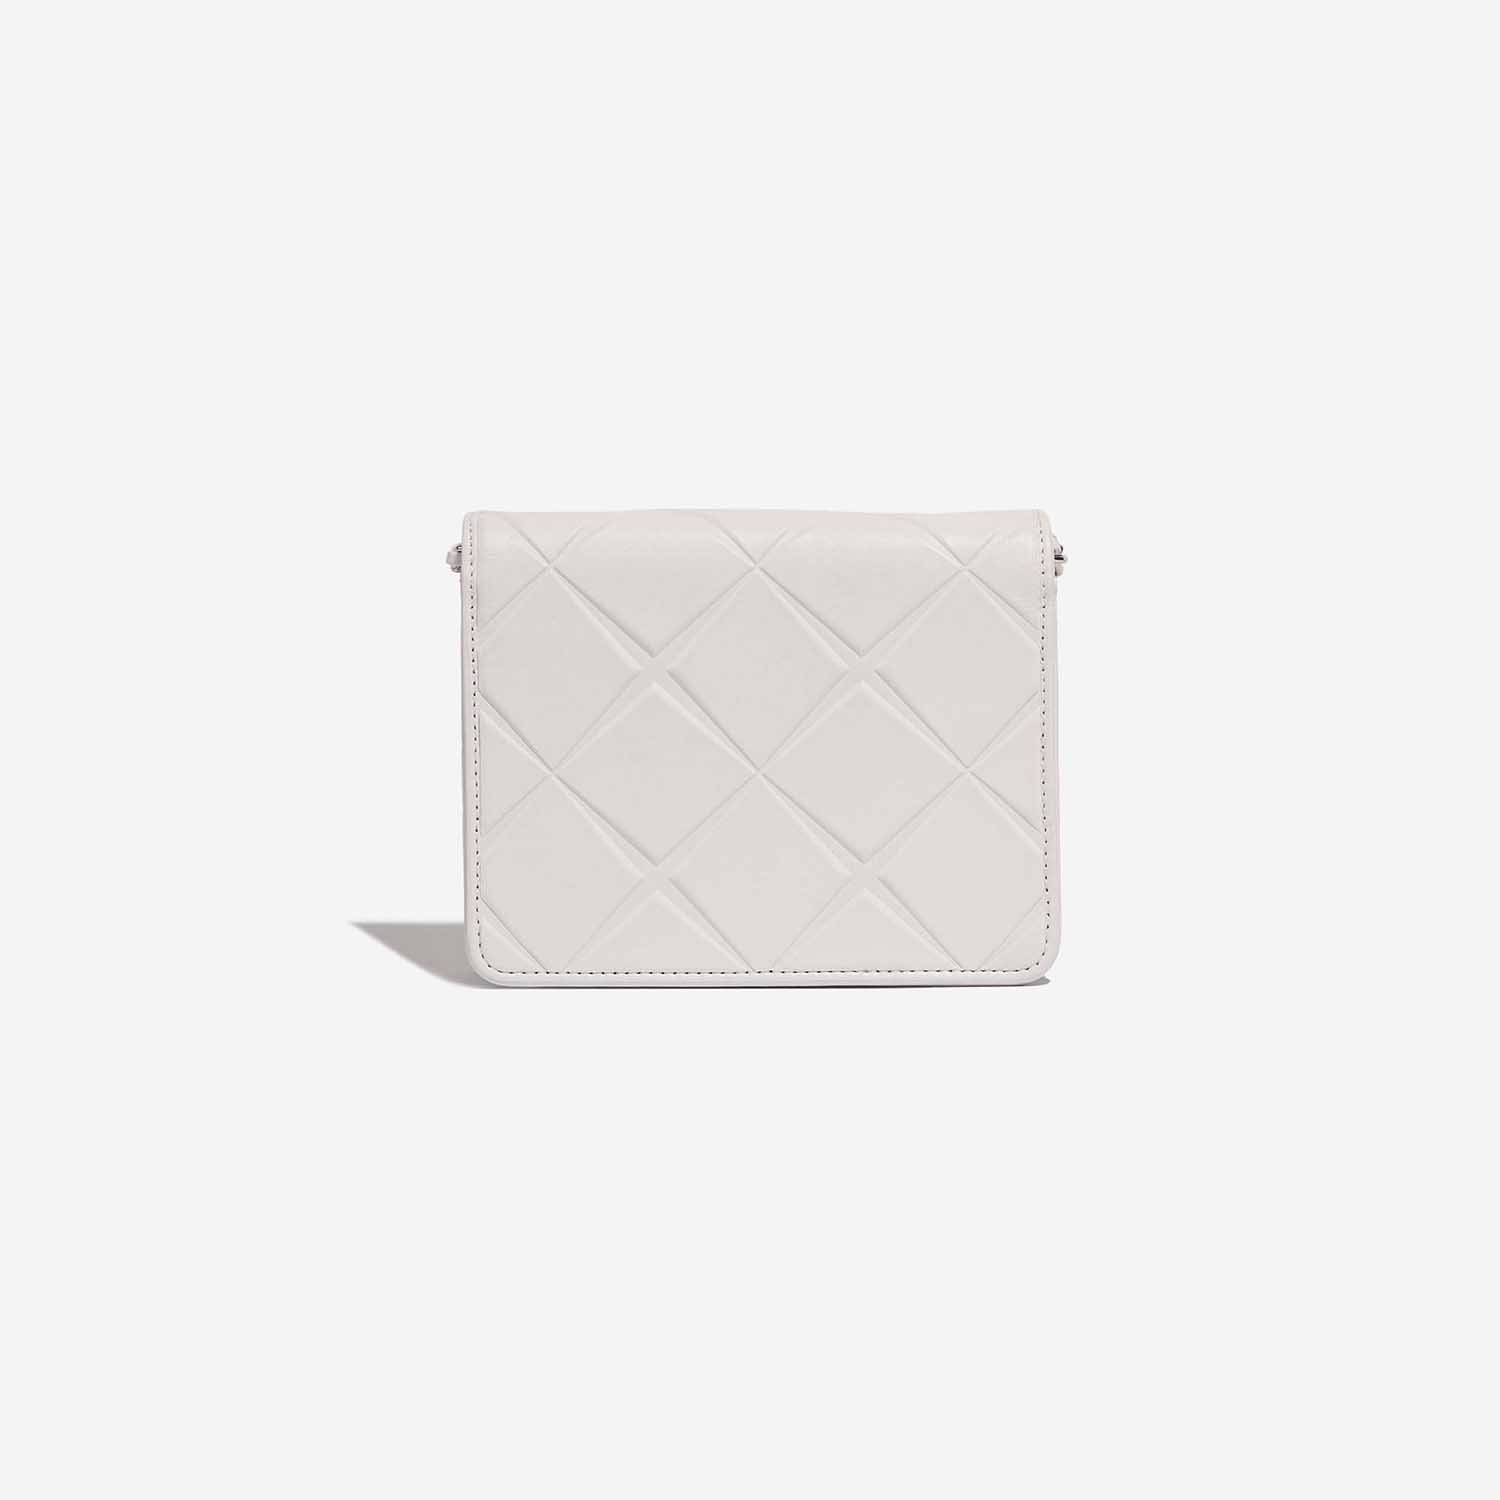 Chanel Timeless MiniFlap White Back | Verkaufen Sie Ihre Designer-Tasche auf Saclab.com